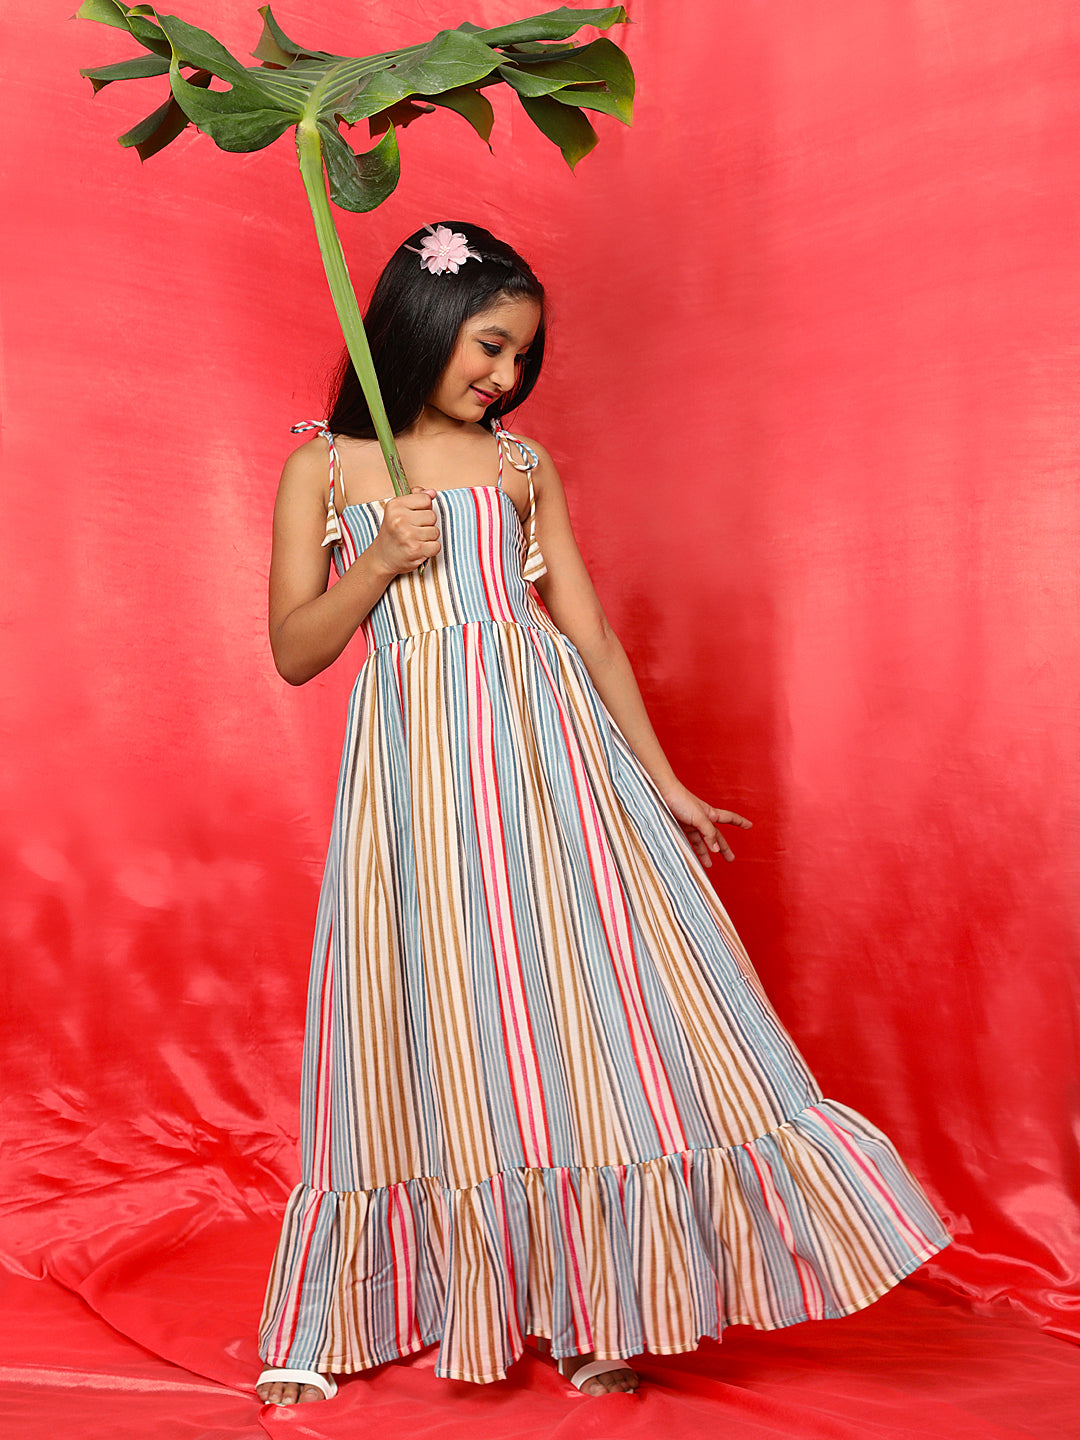 Multicolor Striped Dress